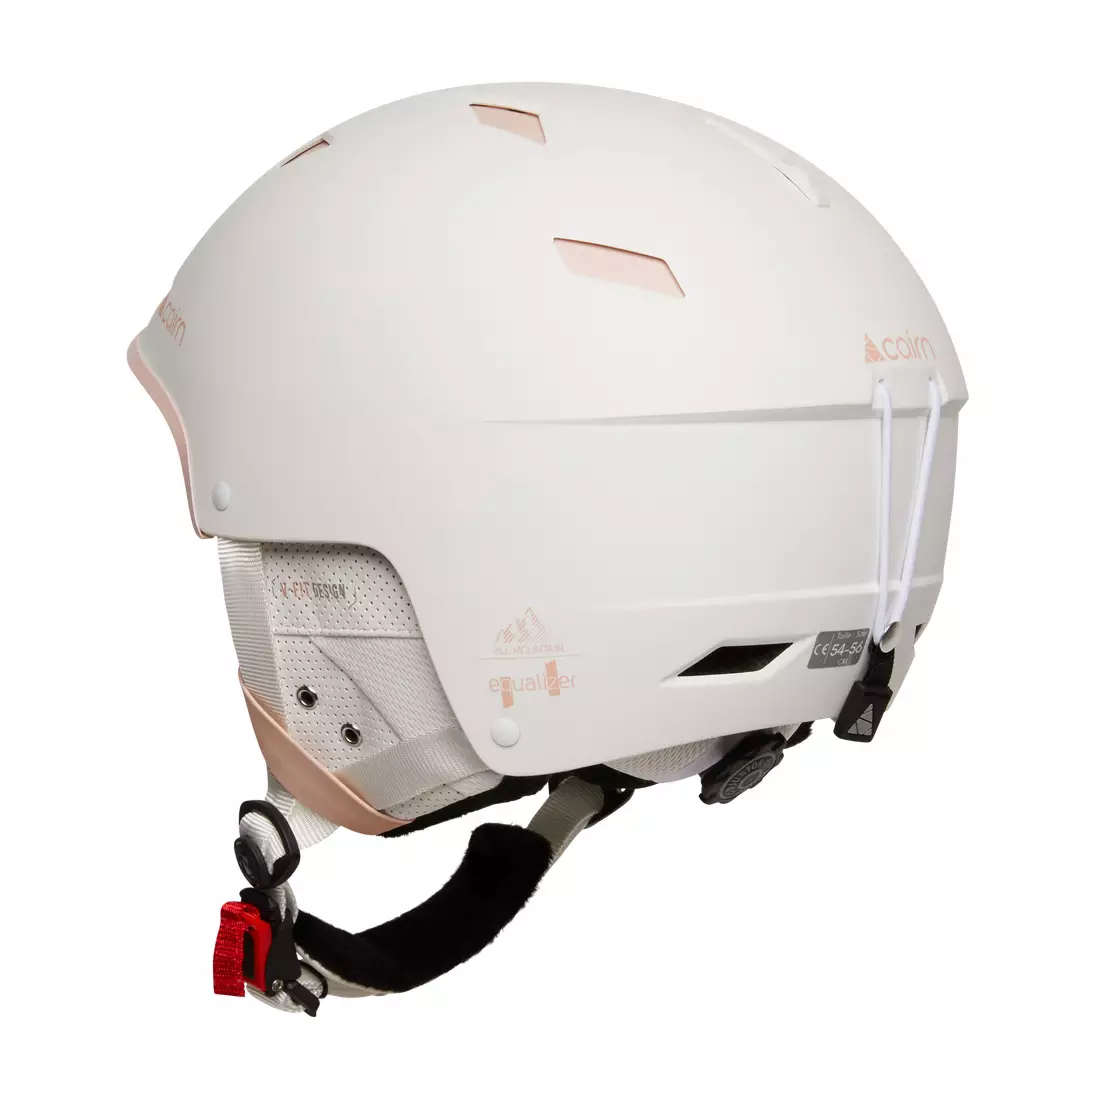 CAIRN winter ski / snowboard helmet EQUALIZER White Powder Pink 060566010154/56